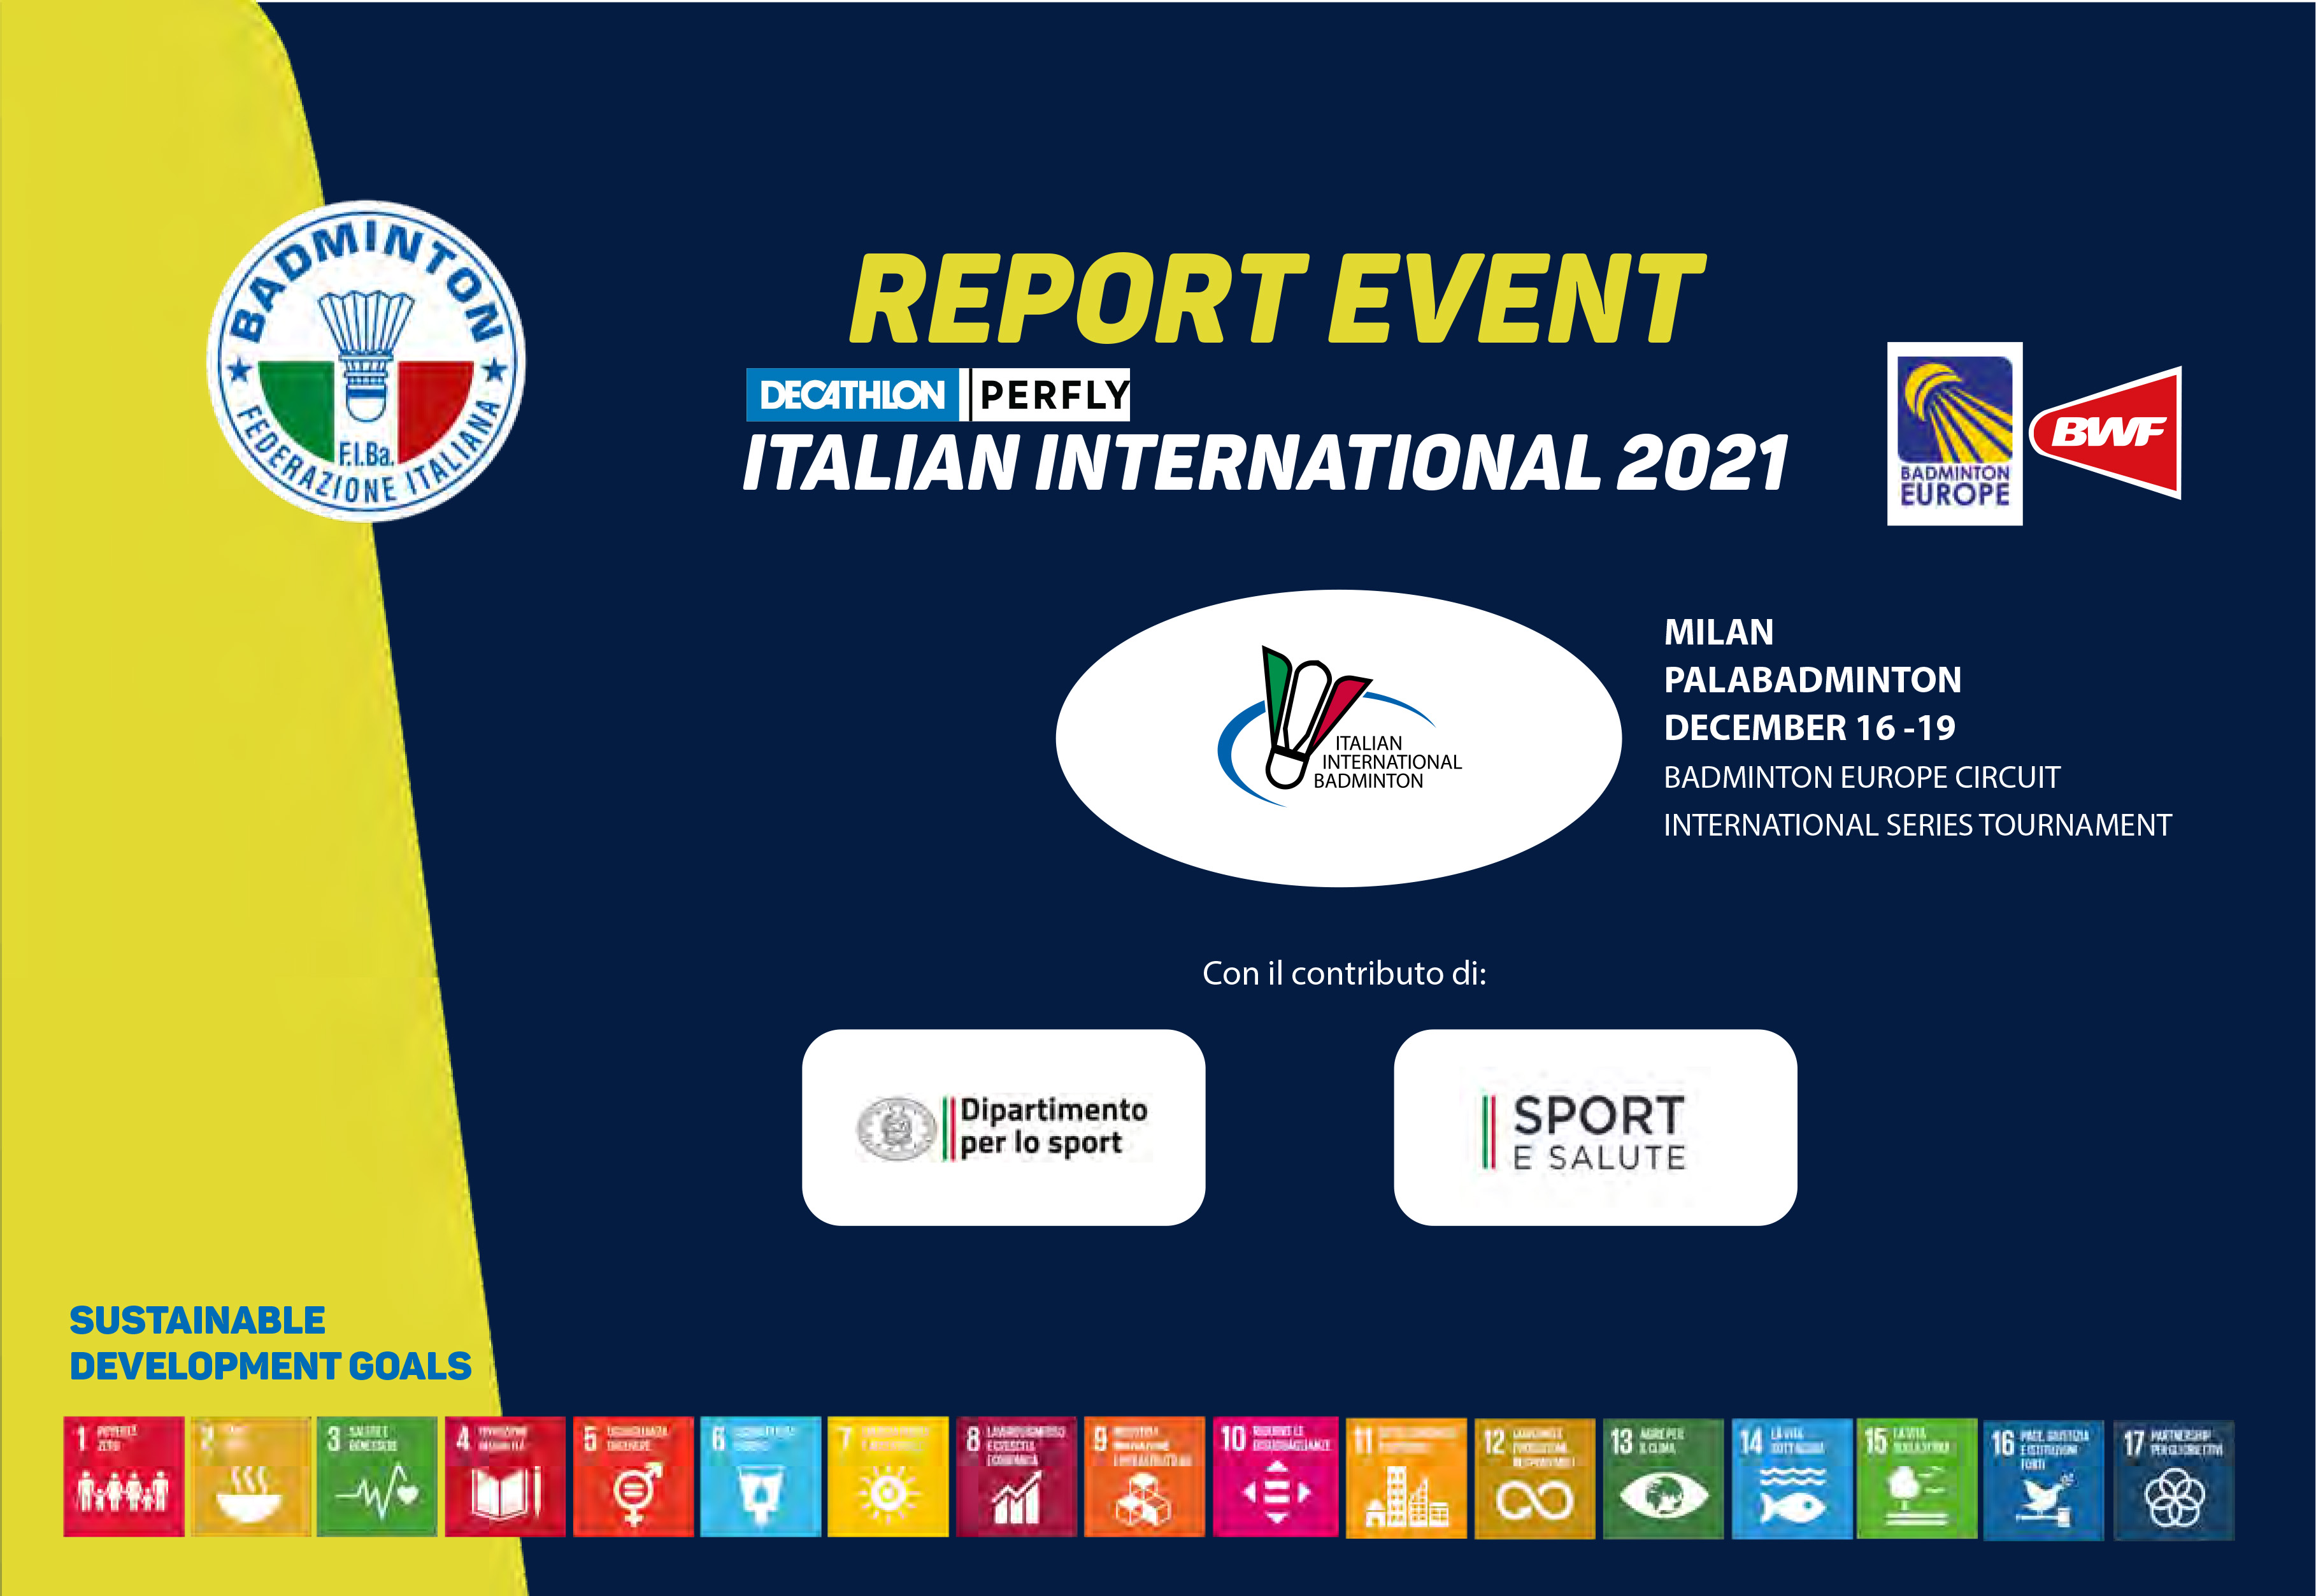 RELAZIONE DECATHLON PERFLY ITALIAN INTERNATIONAL 2021